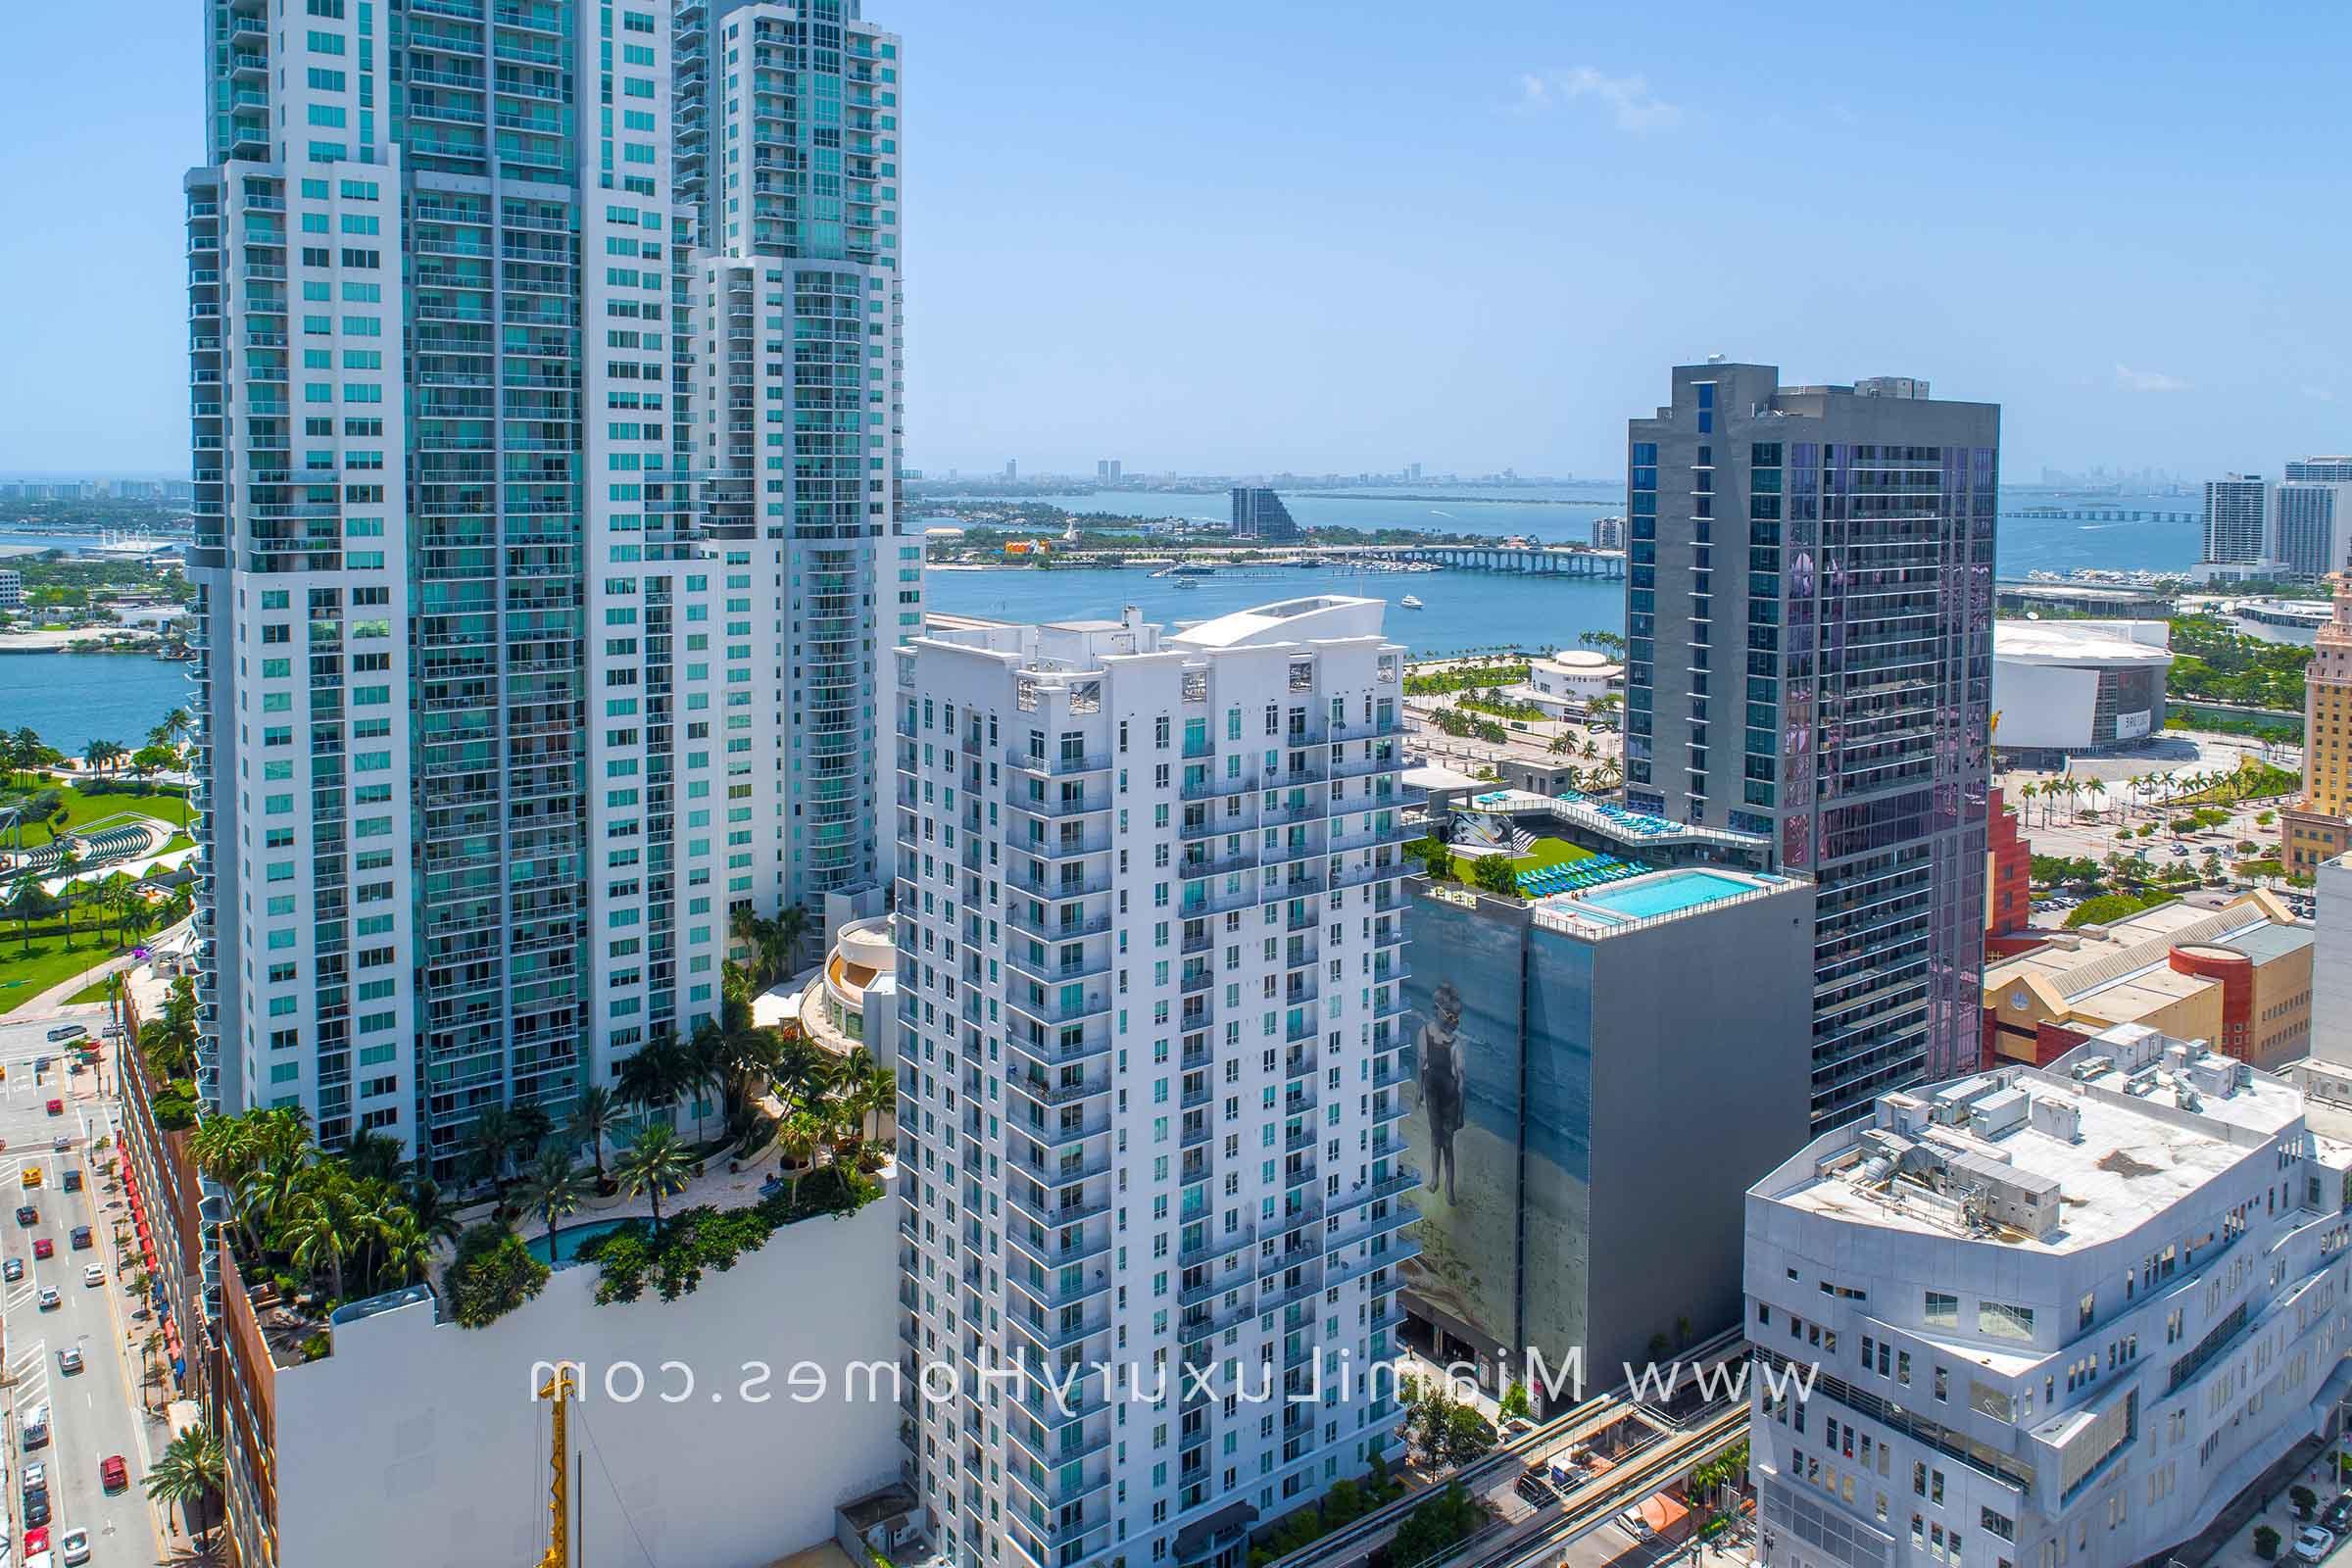 迈阿密的市中心第一层阁楼 Condo大楼